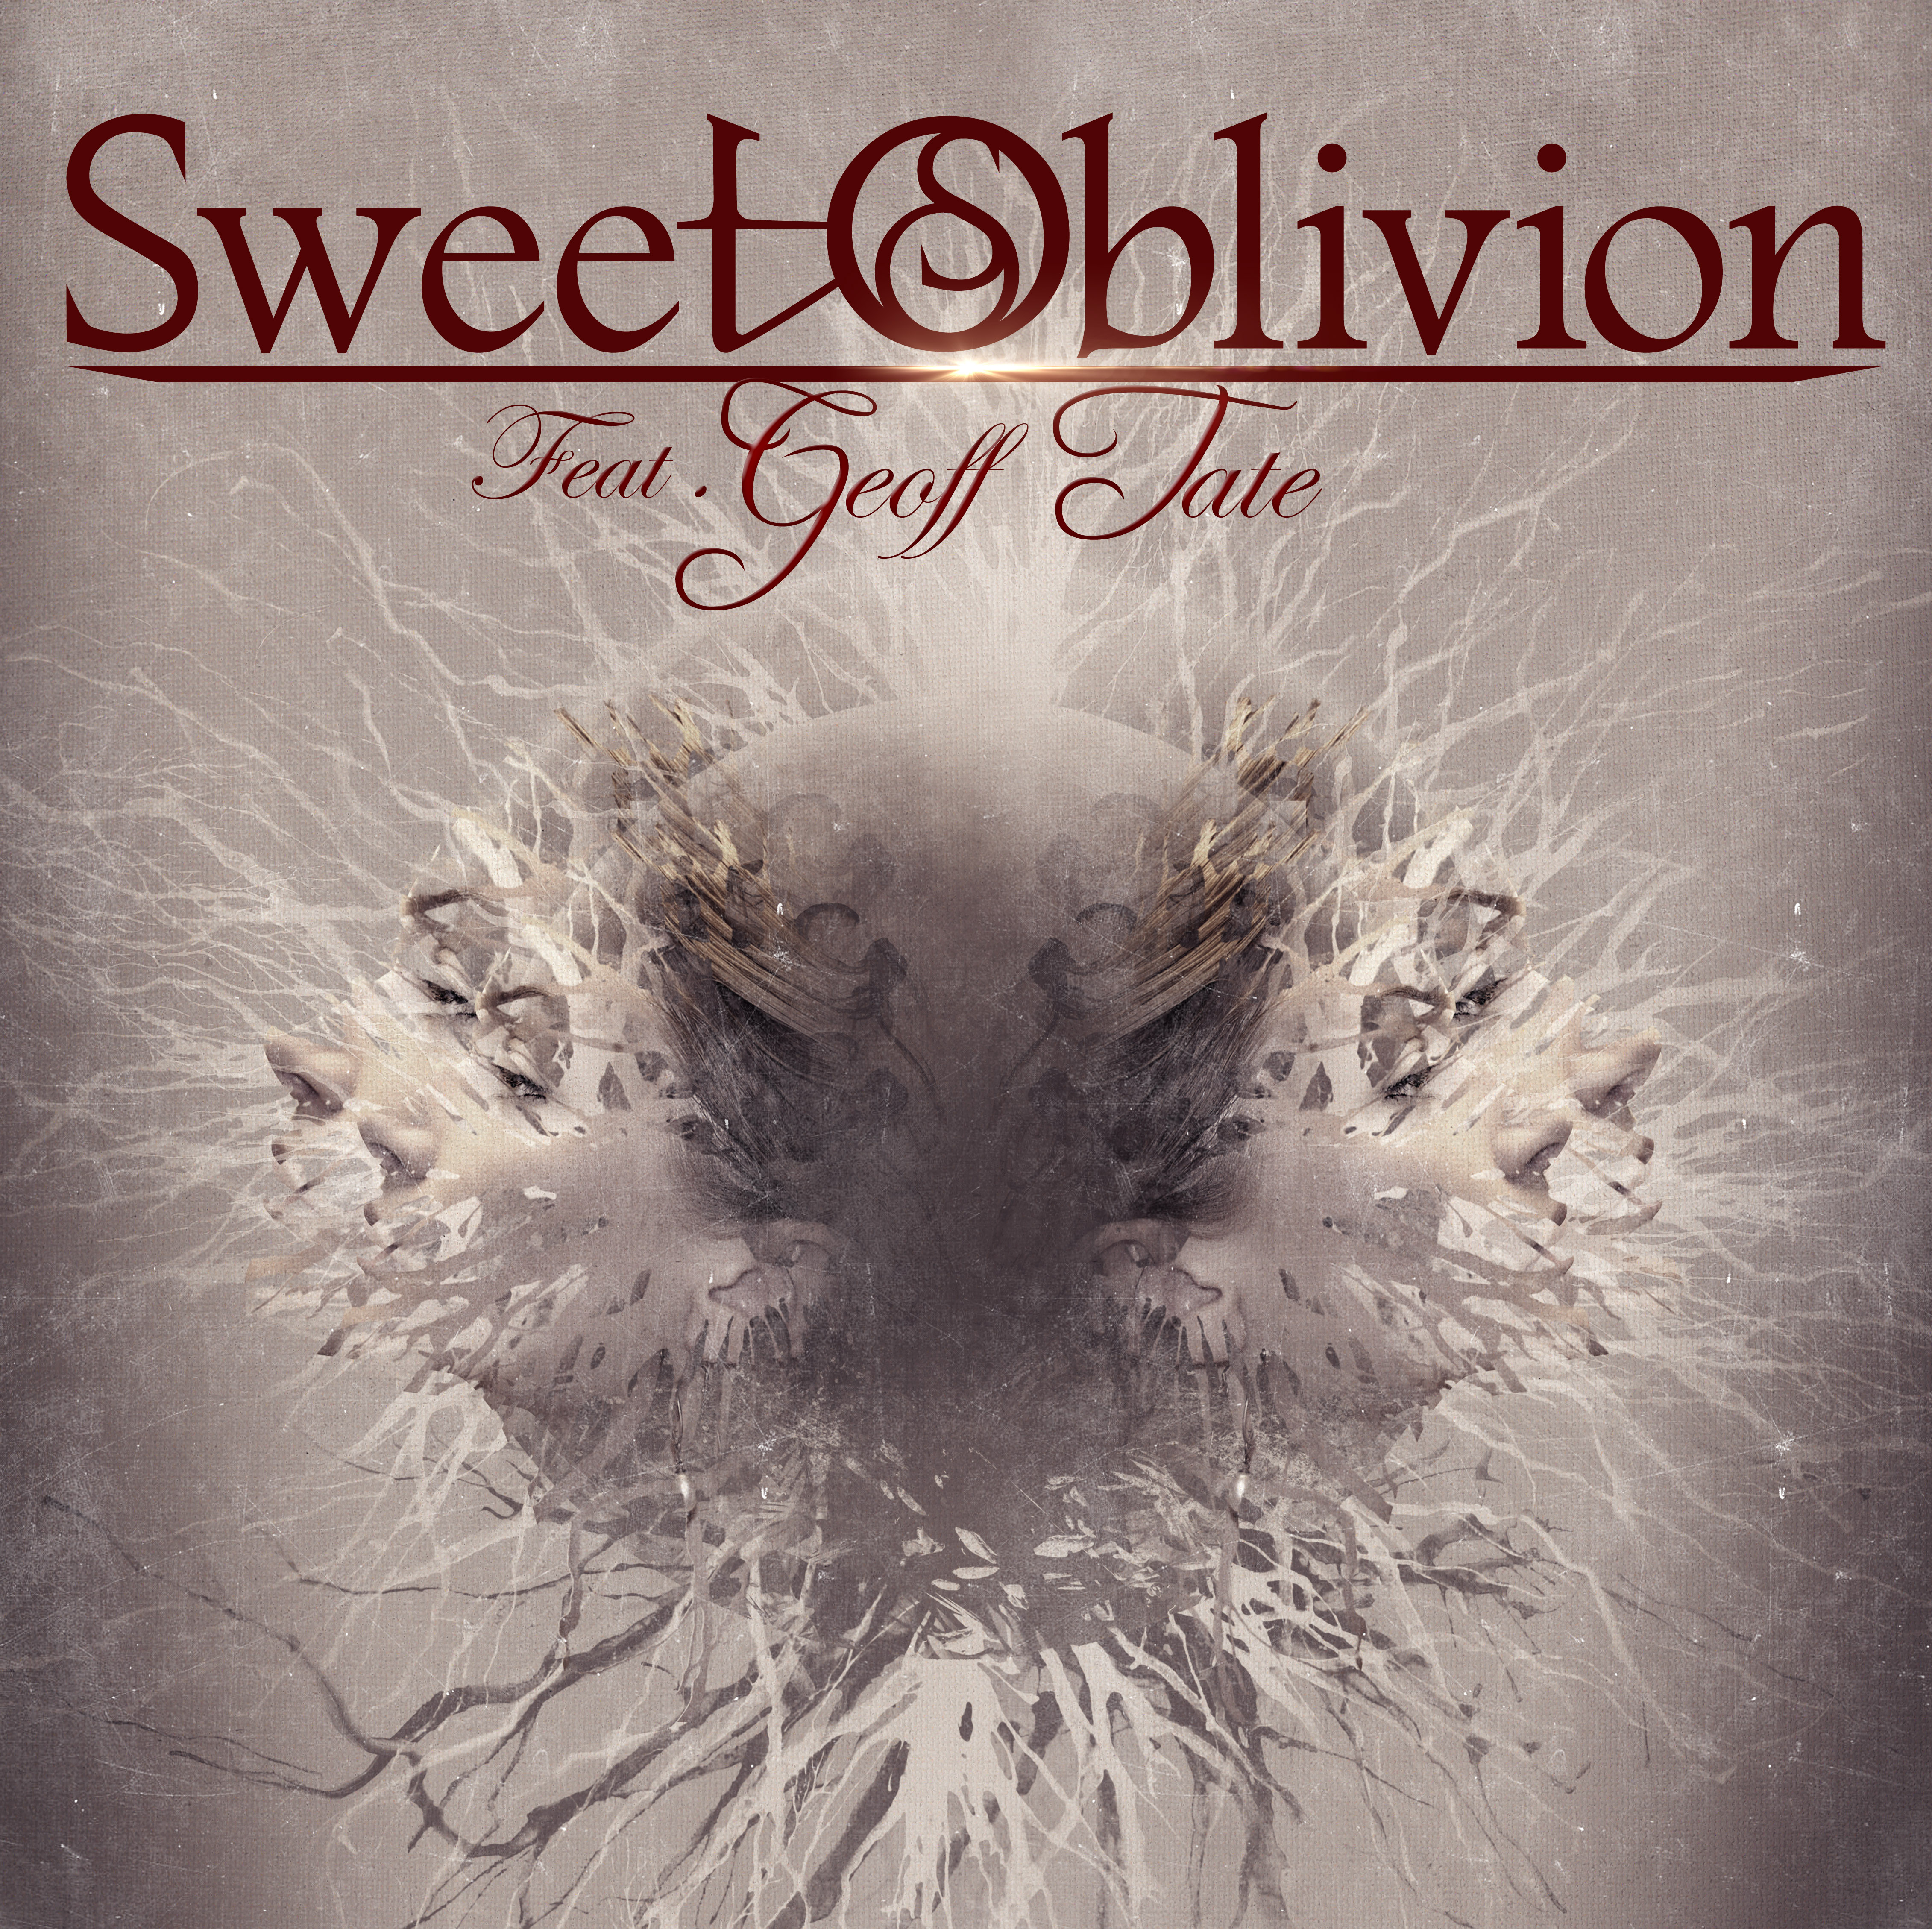 SWEET OBLIVION feat. GEOFF TATE - “Sweet Oblivion Feat. Geoff Tate”